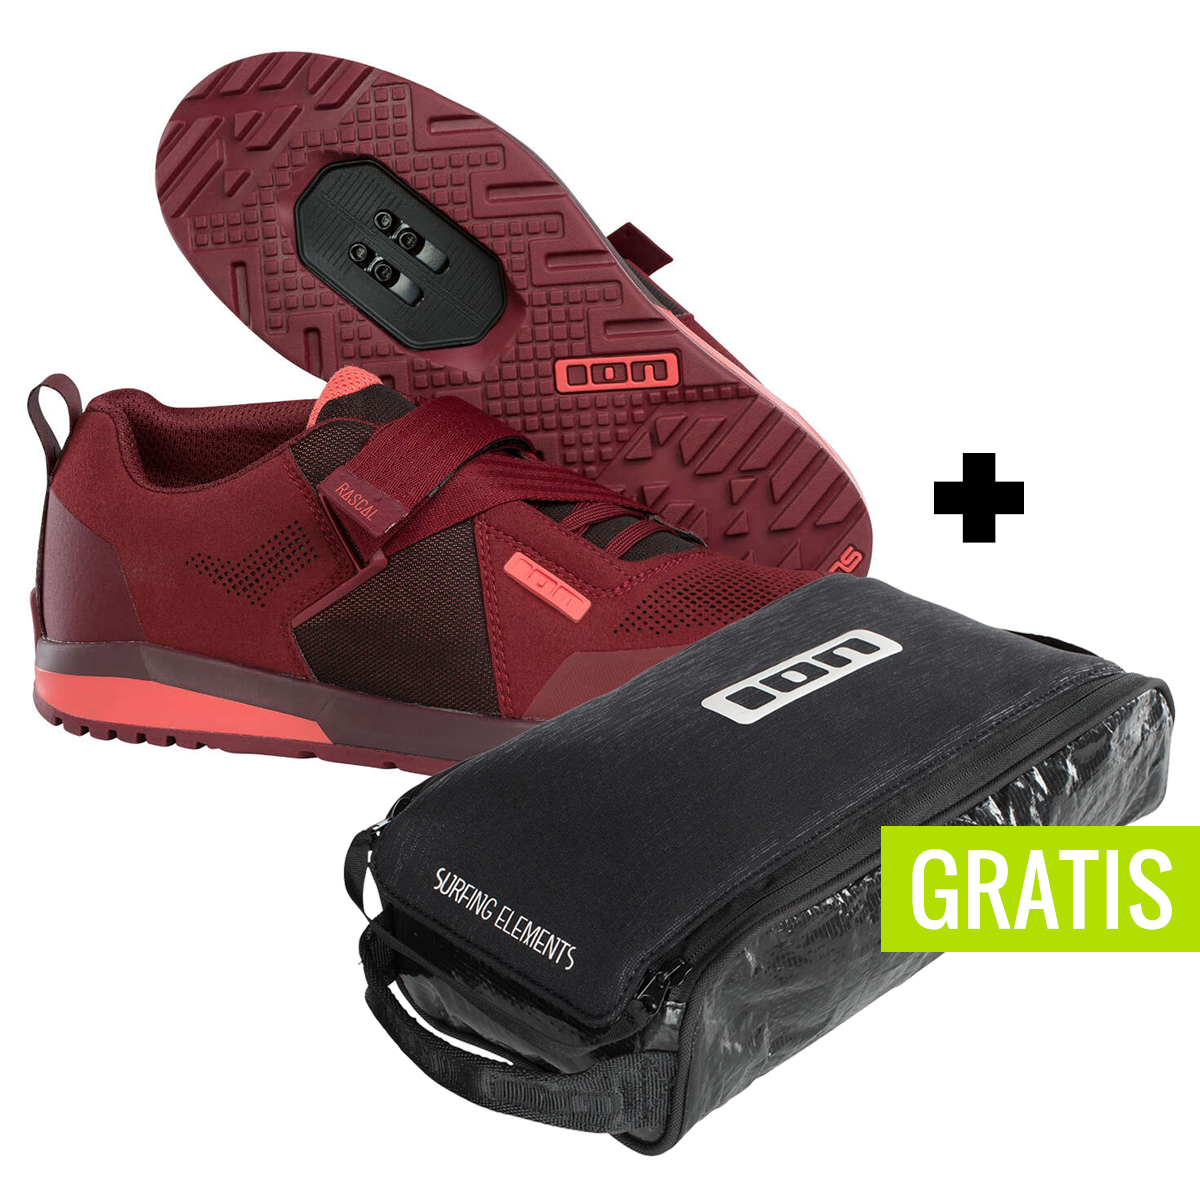 ION Scarpe MTB Rascal Ruby Rad + free shoe bag